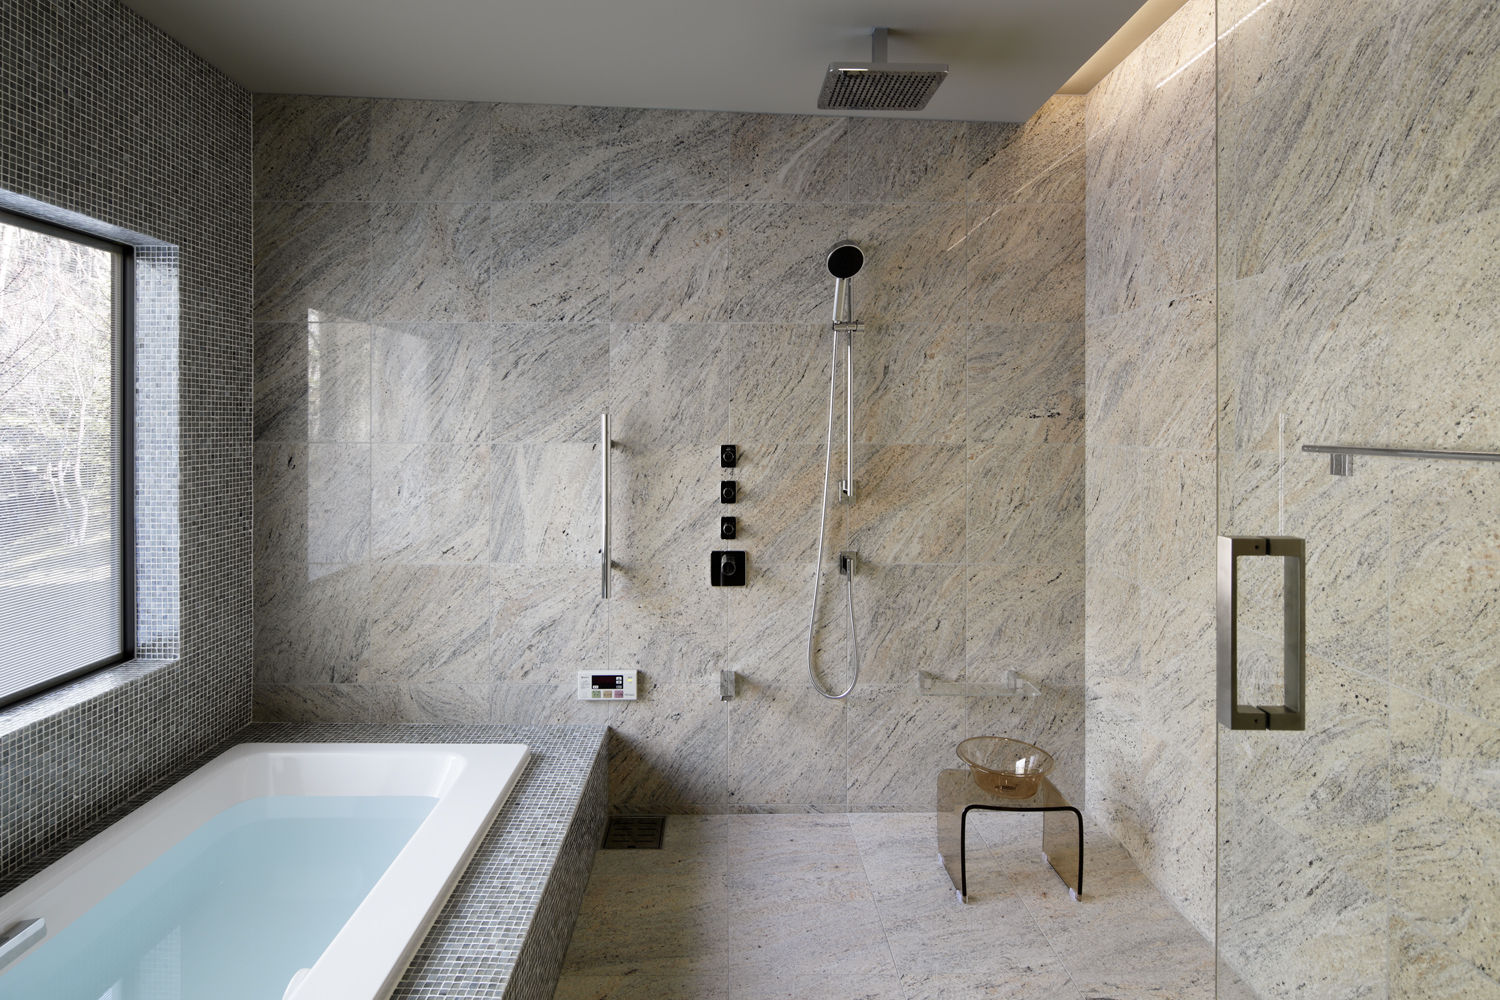 Bathroom 久保田章敬建築研究所 Nowoczesna łazienka stone,glass mosaic,rain shower